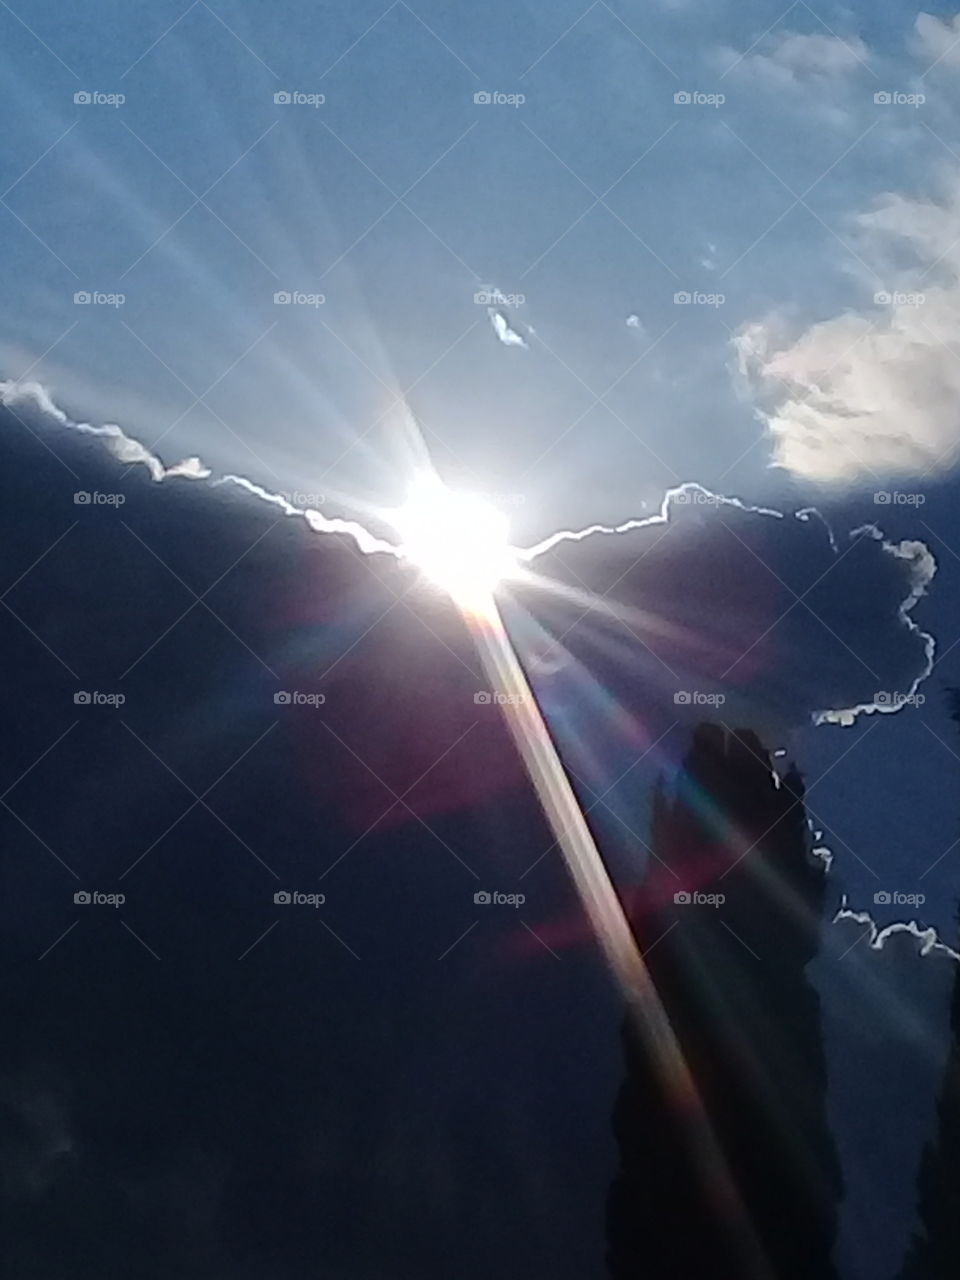 imagen del sol marcando el límite entre los espesos nubarrones de tormenta y el azul del cielo de verano despejado.